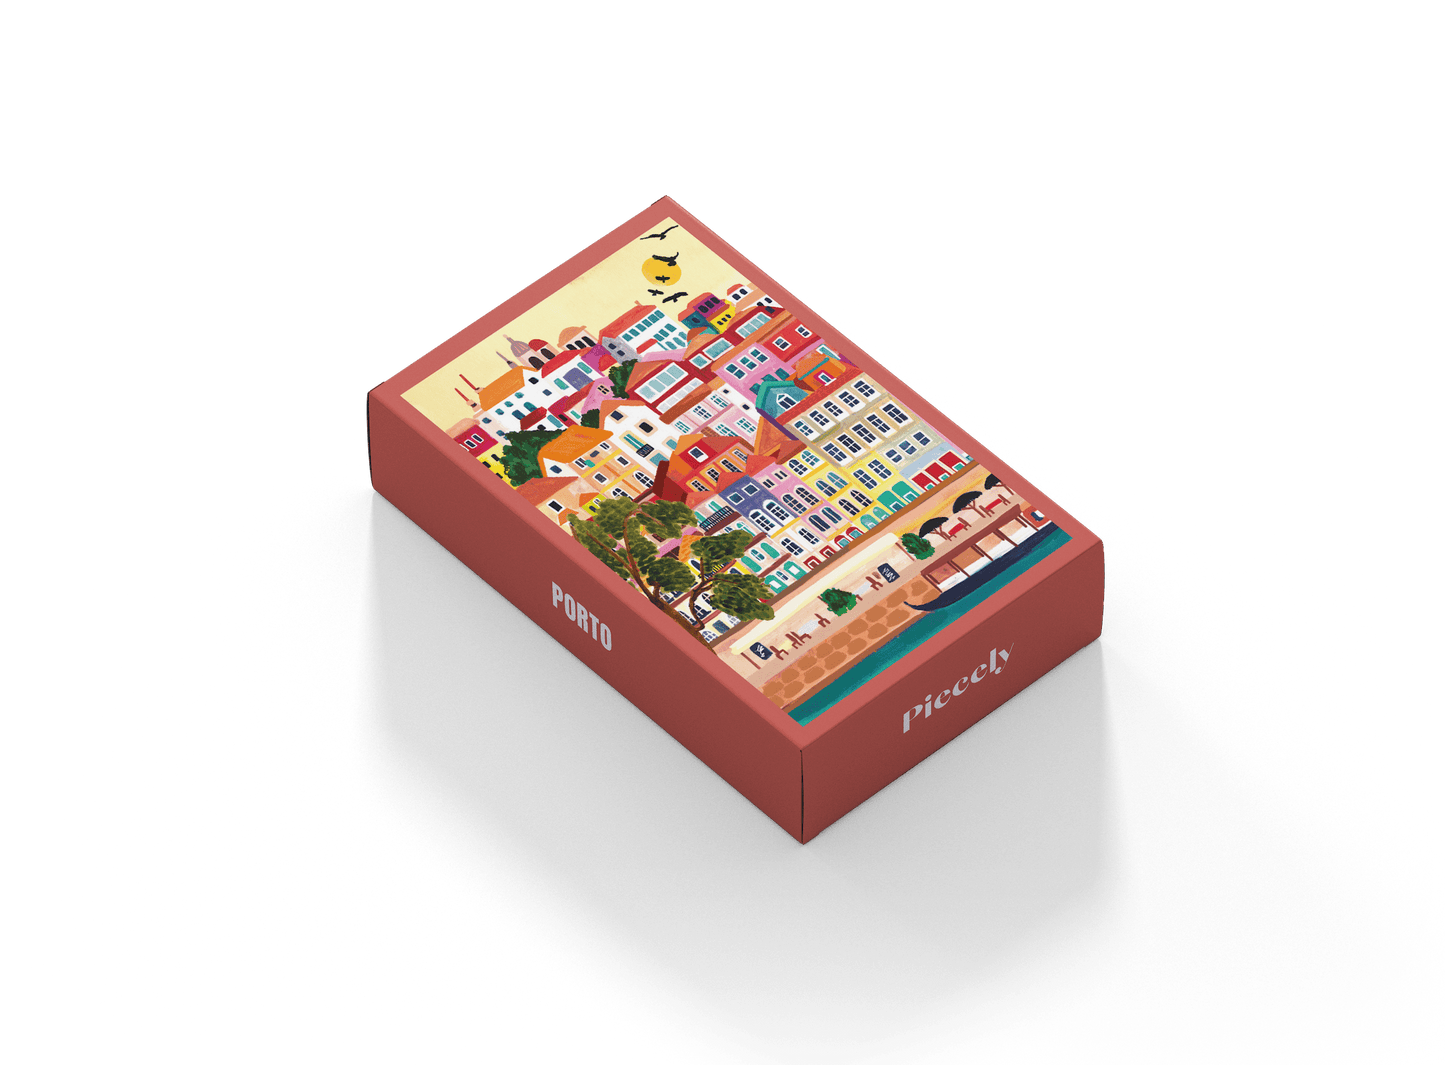 99-teiliges Porto Minipuzzle für Erwachsene, das die bunten Häuser und die Küste der Stadt Porto in Portugal zeigt.